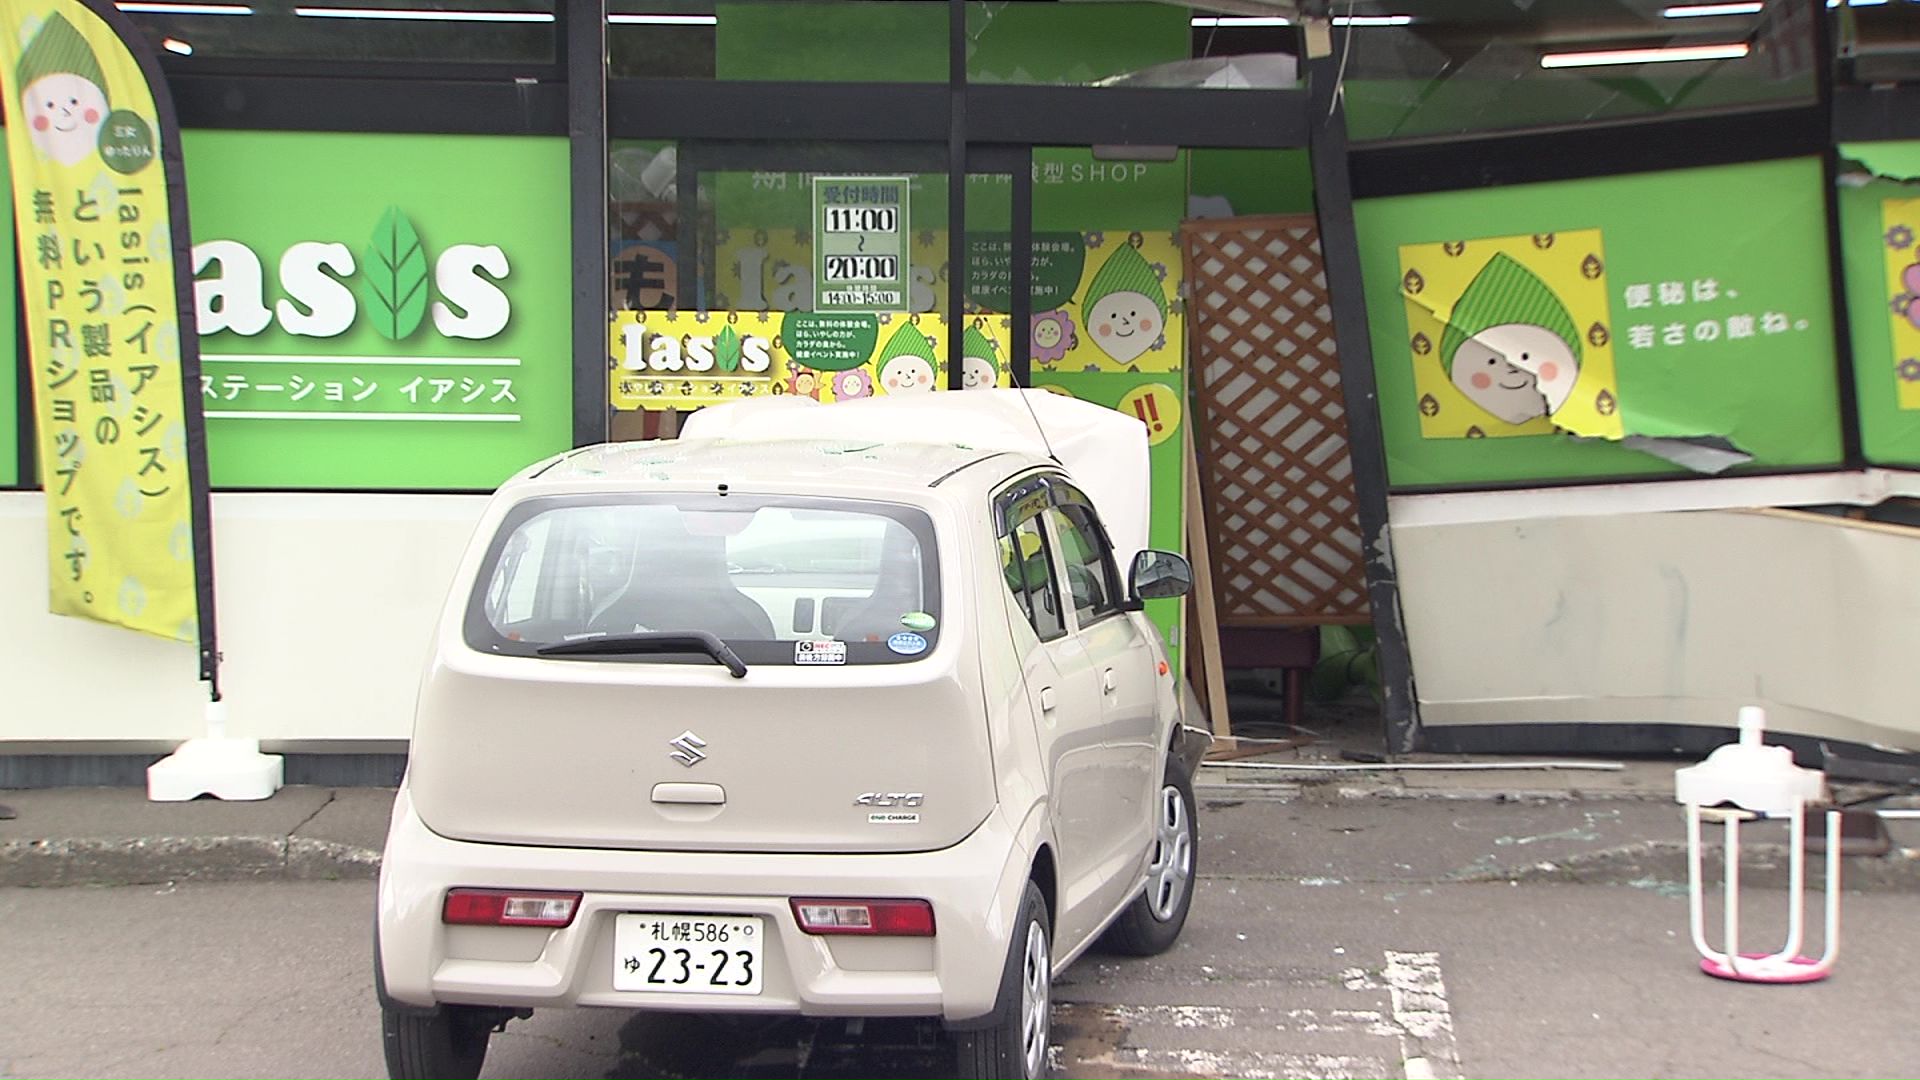 また運転操作を誤った事故 健康器具販売店に車突っ込む 女性客ケガ 運転手の60代女性「バックしようとしたらドライブに入れたままアクセルを踏んでしまった」北海道小樽市